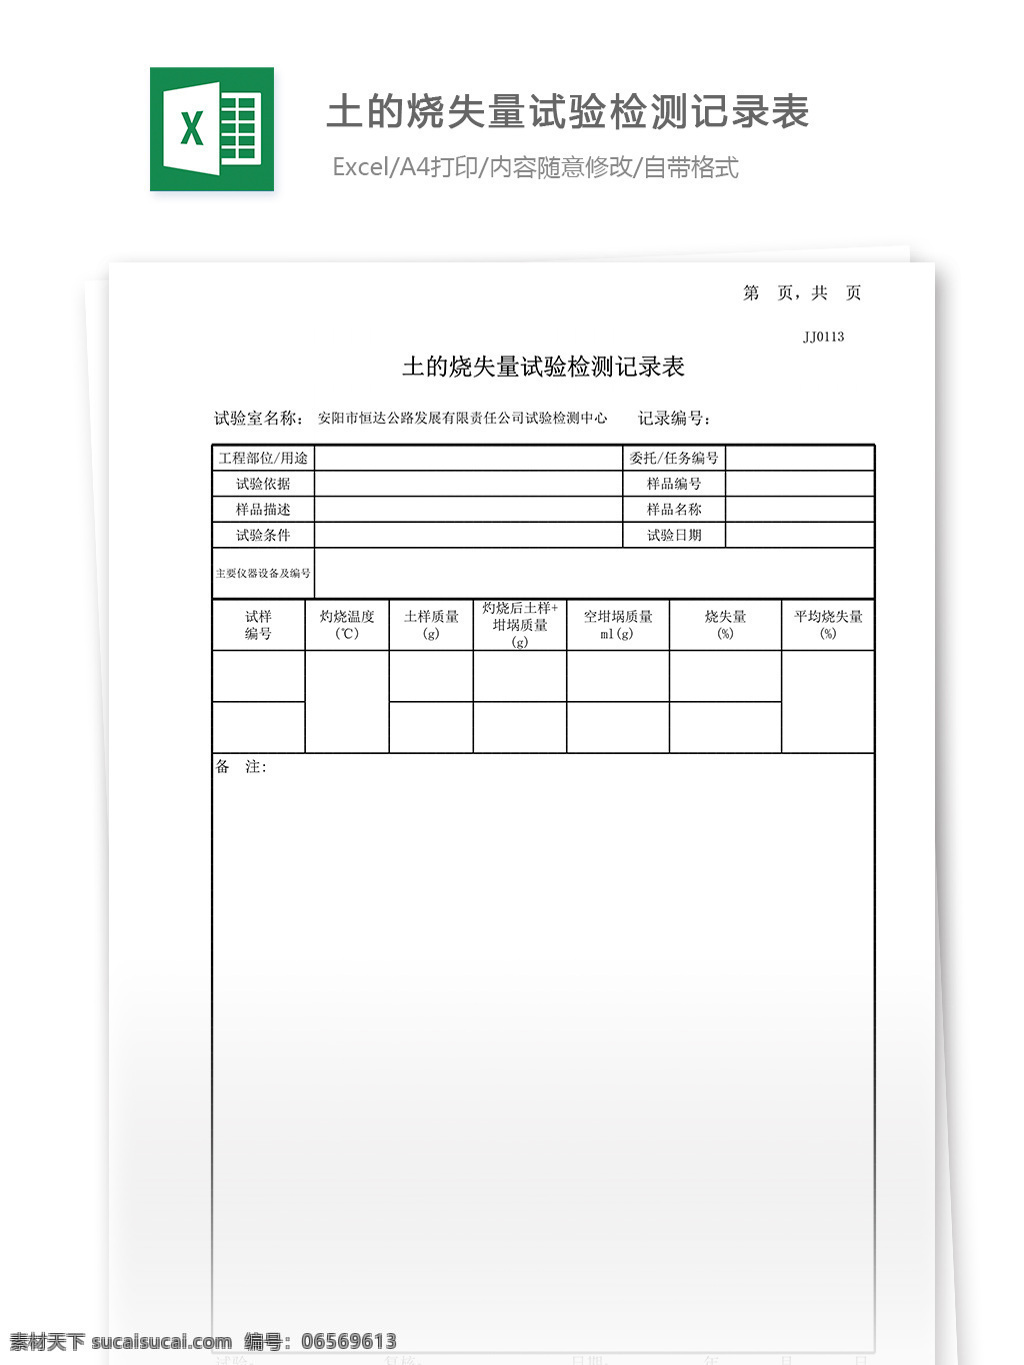 土 烧 失 量 试验 记录表 表格 表格模板 表格设计 图表 试验记录表 烧失量 土工